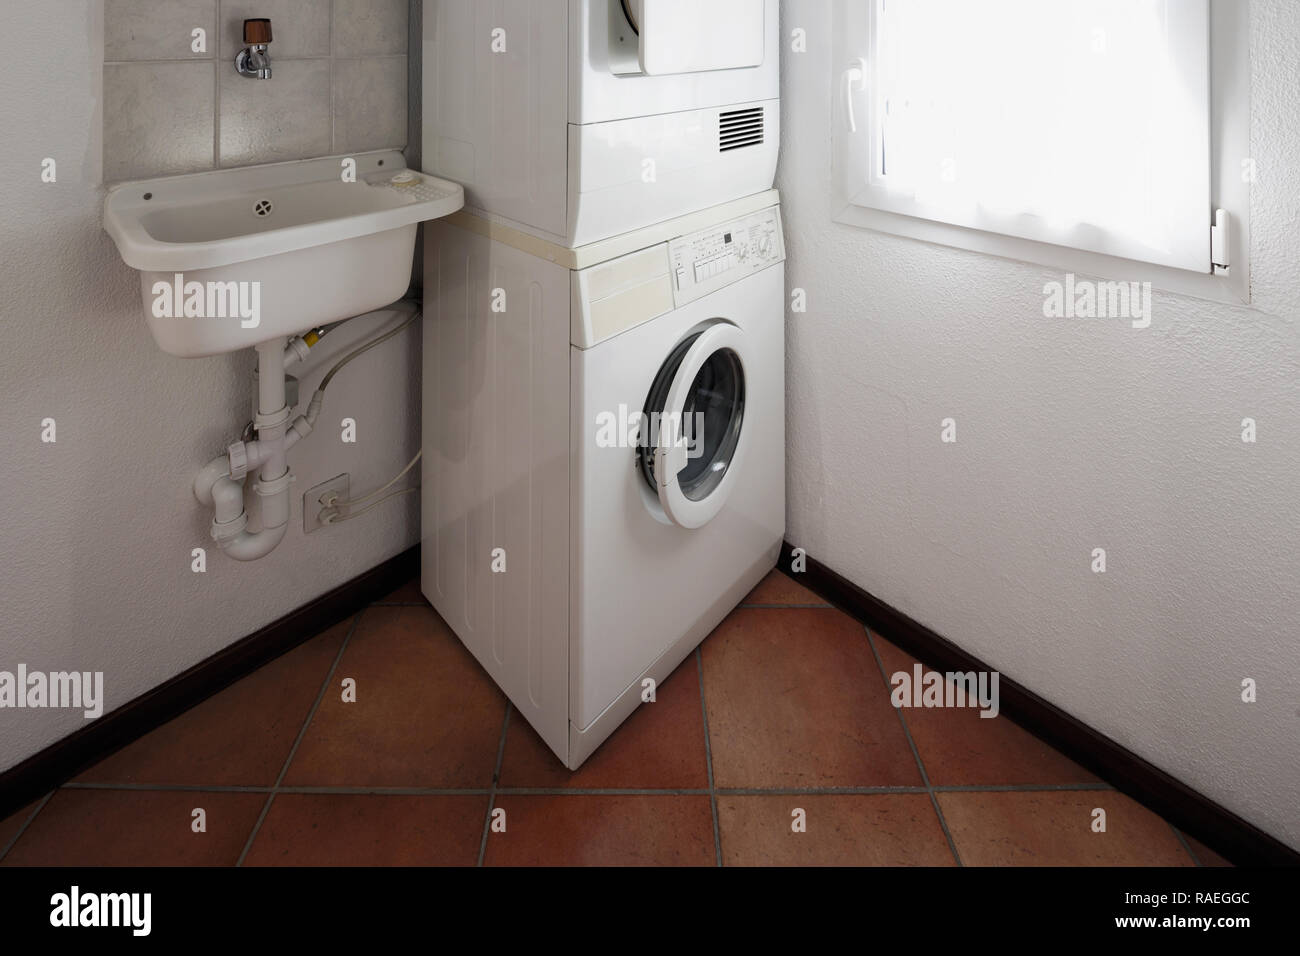 Waschküche mit Waschmaschine und Trockner übereinander gestapelt  Stockfotografie - Alamy